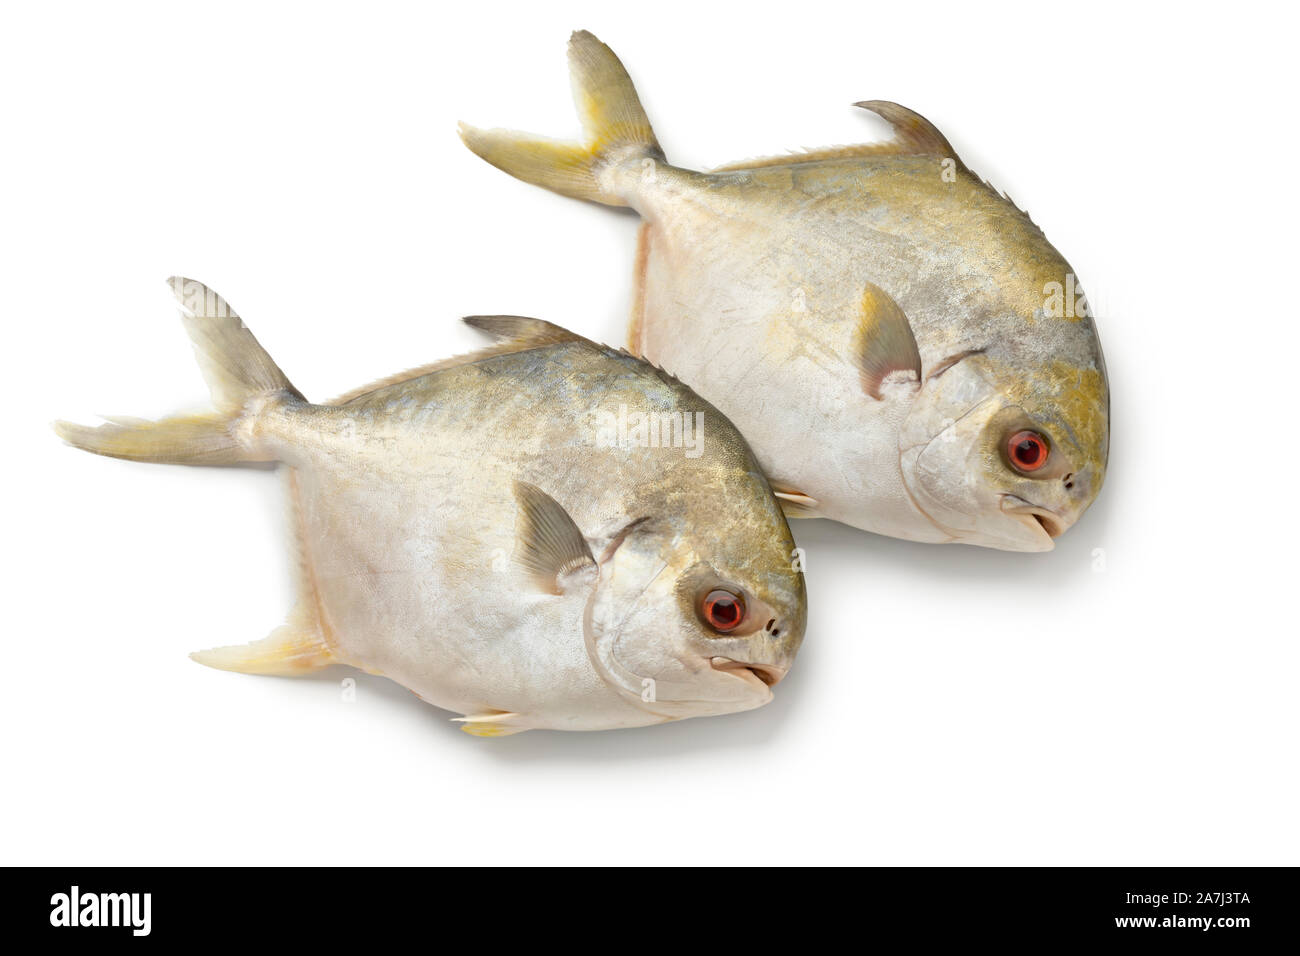 Coppia di crudo fresco golden pomfret pesci o i pesci castagna pesce isolato su sfondo bianco Foto Stock